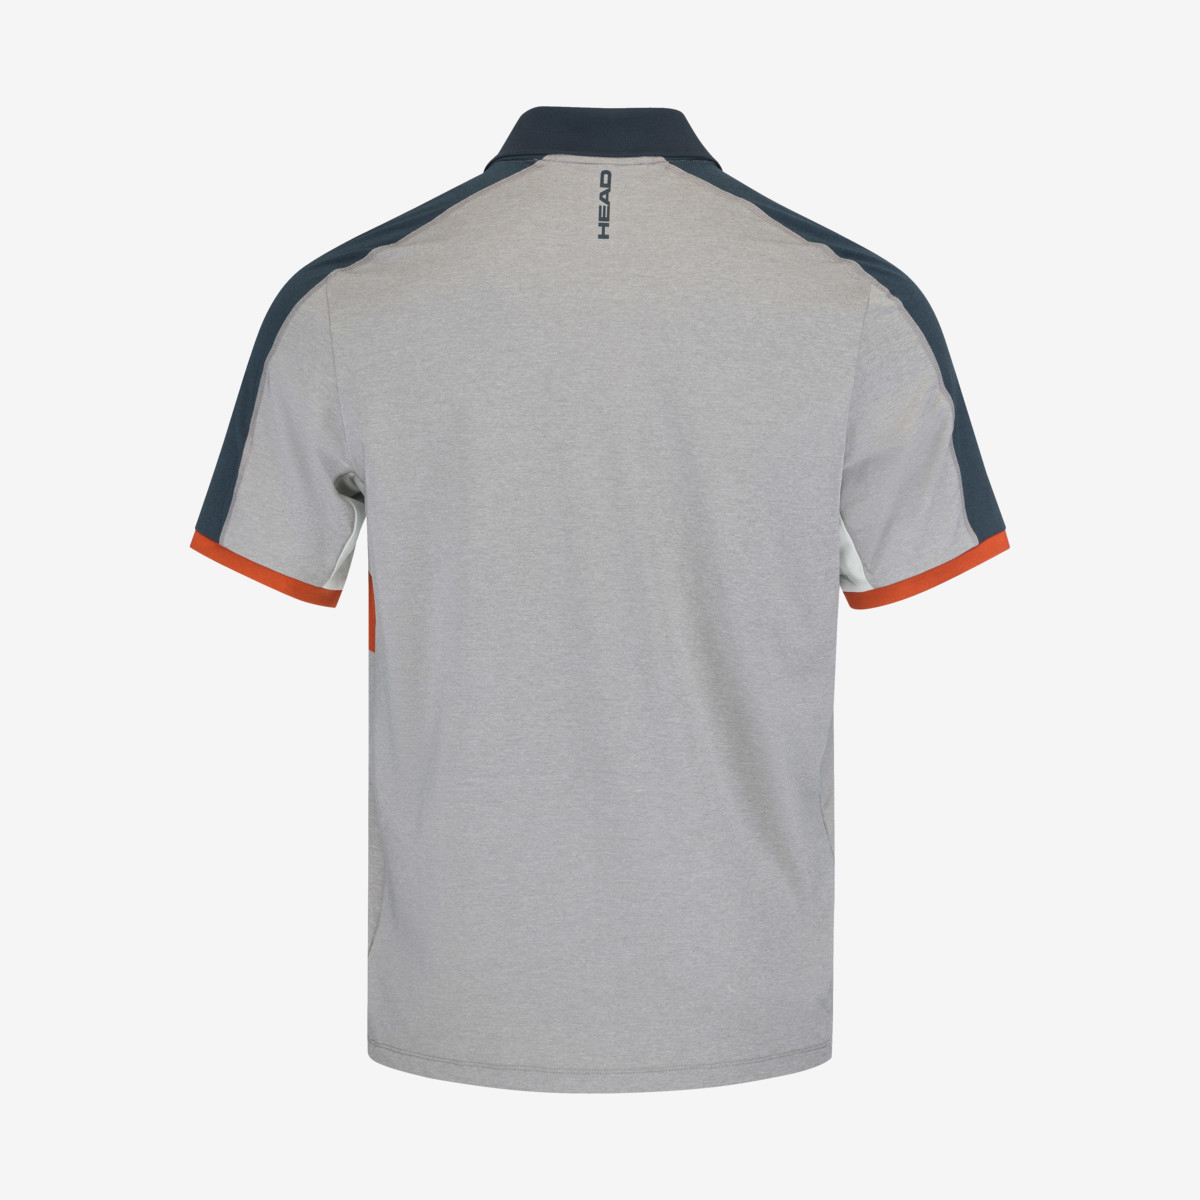 padel-tech-polo-shirt-men-orange (1)